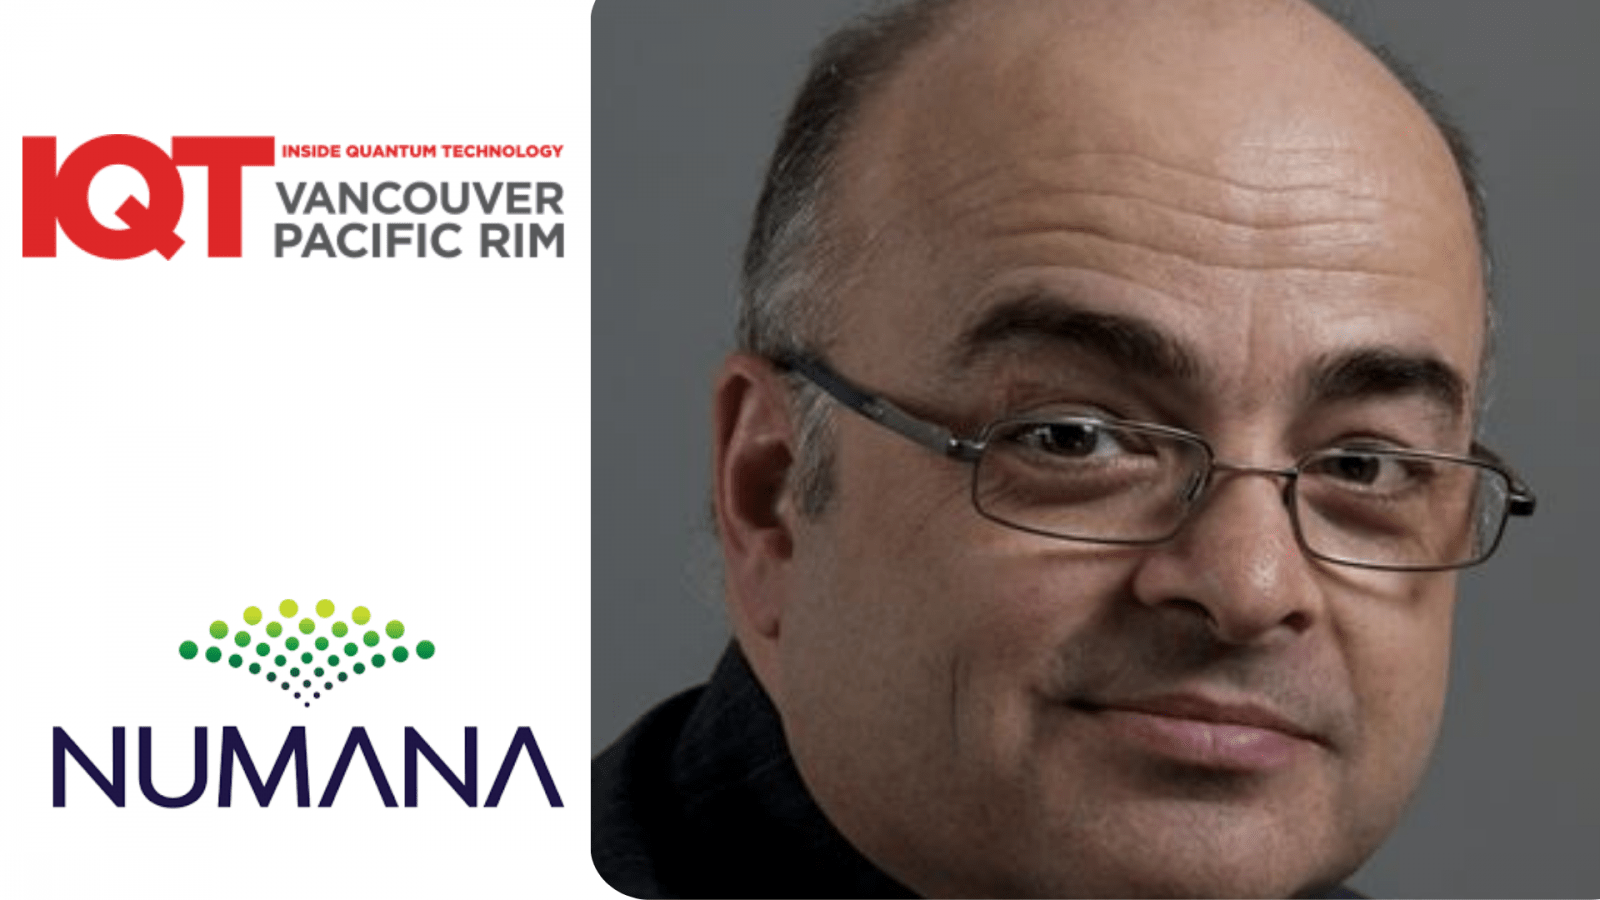 ژاک مک نیل، هماهنگ کننده ابتکار ارتباطات کوانتومی برای Numana، سخنران کنفرانس IQT Vancouver/Pacific Rim برای رویداد 2024 است.